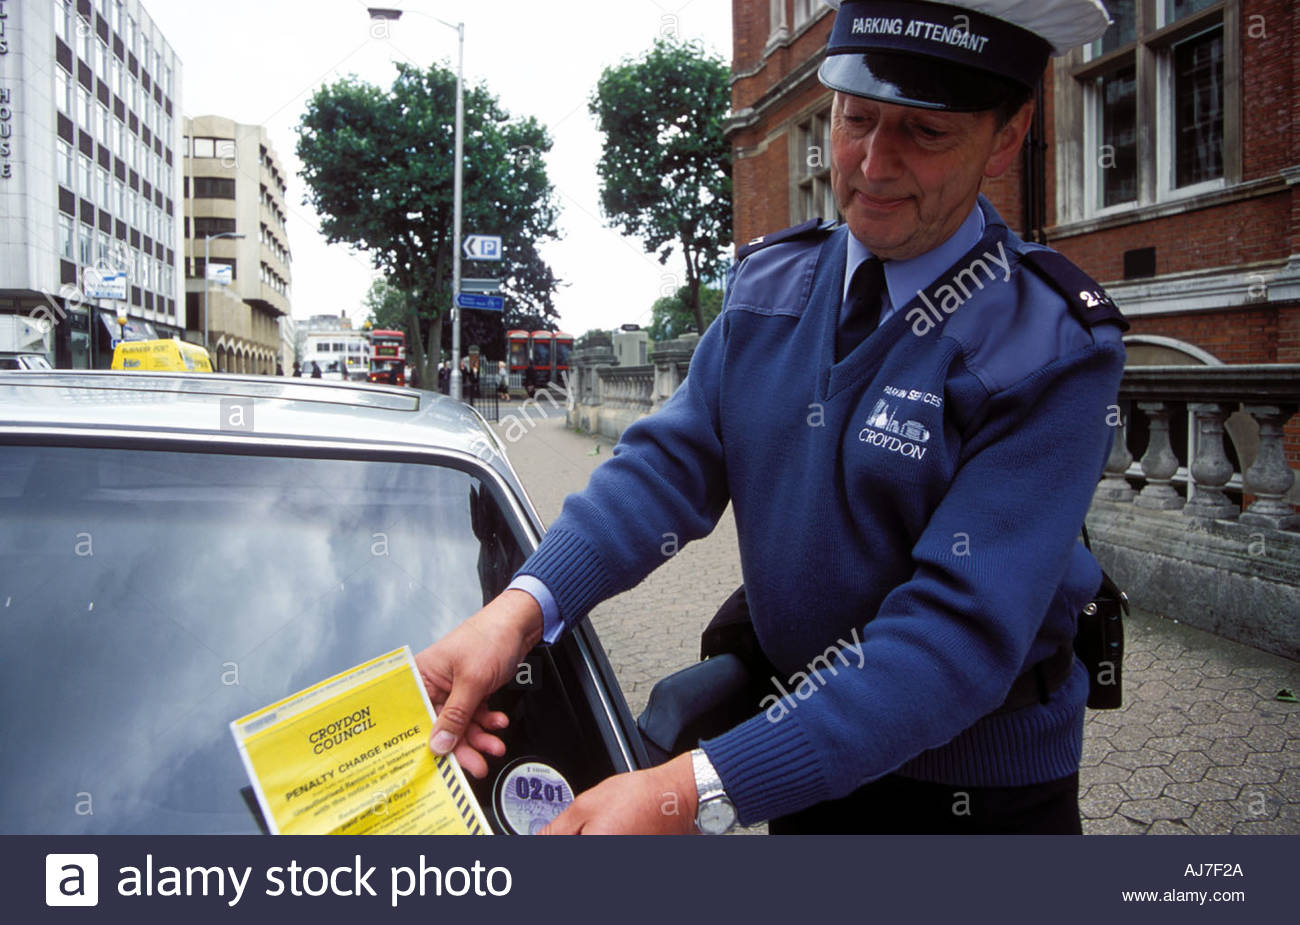 traffic-warden-putting-parking-ticket-on